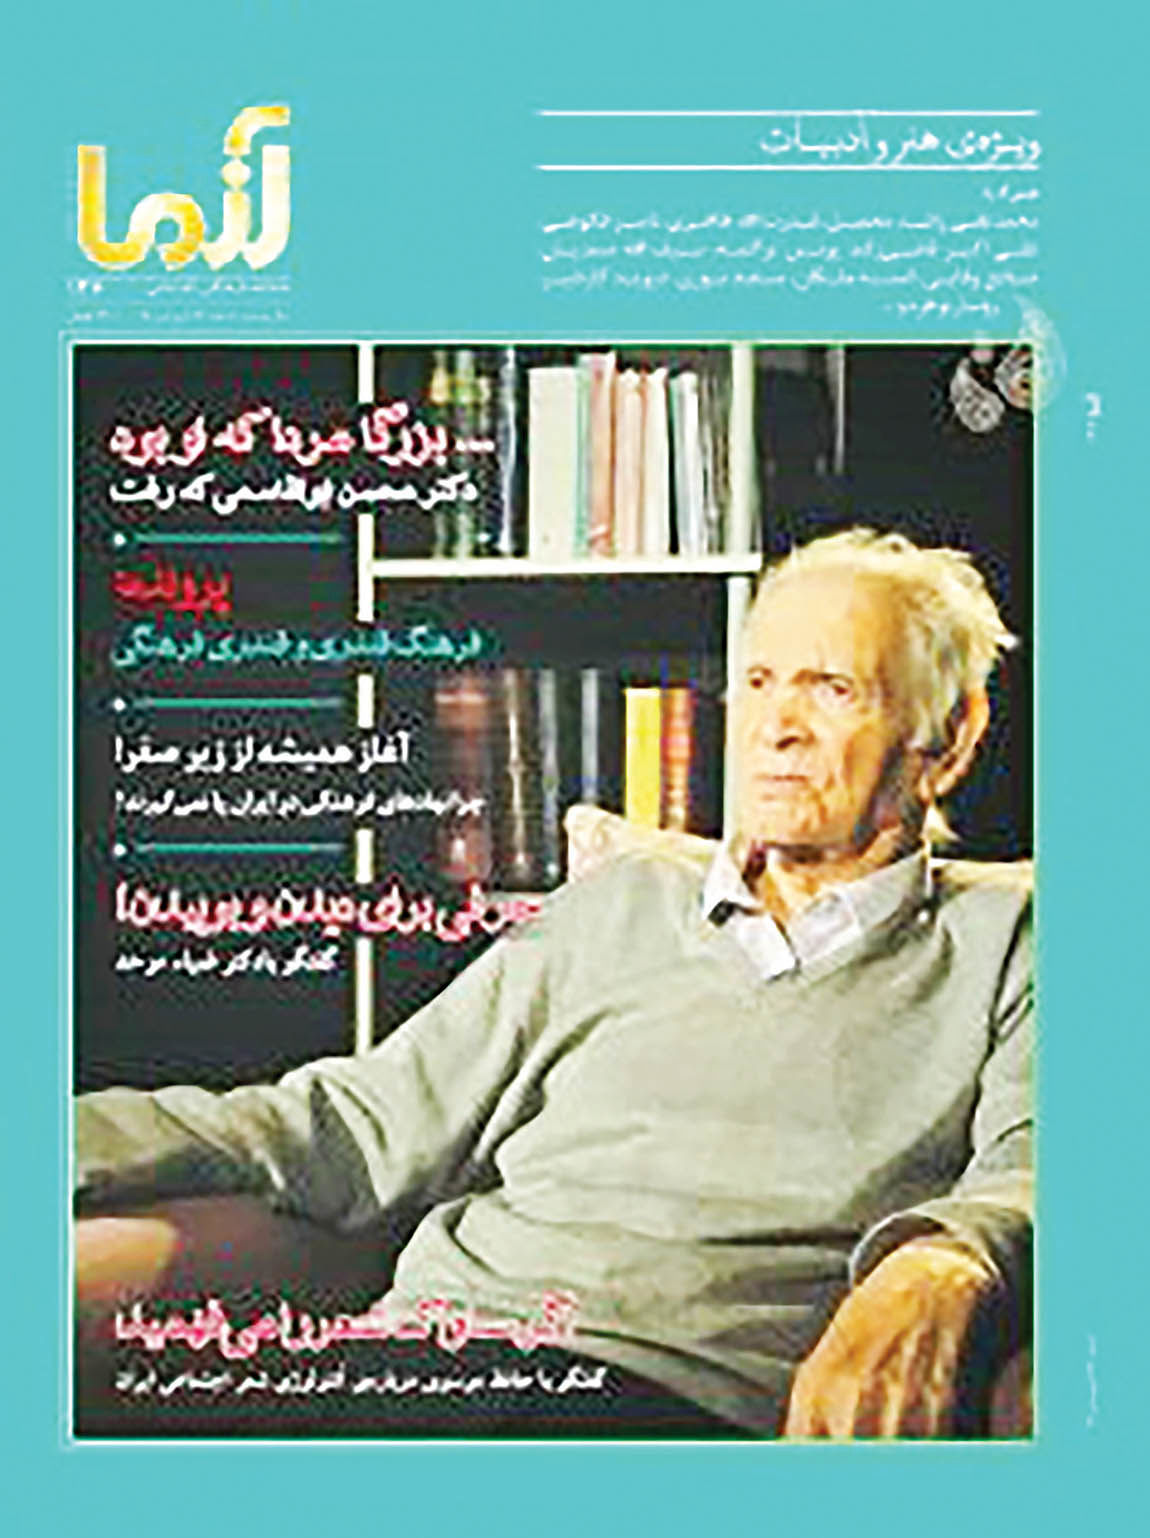 شماره جدید ماهنامه «آزما» با عکس محسن ابوالقاسمی